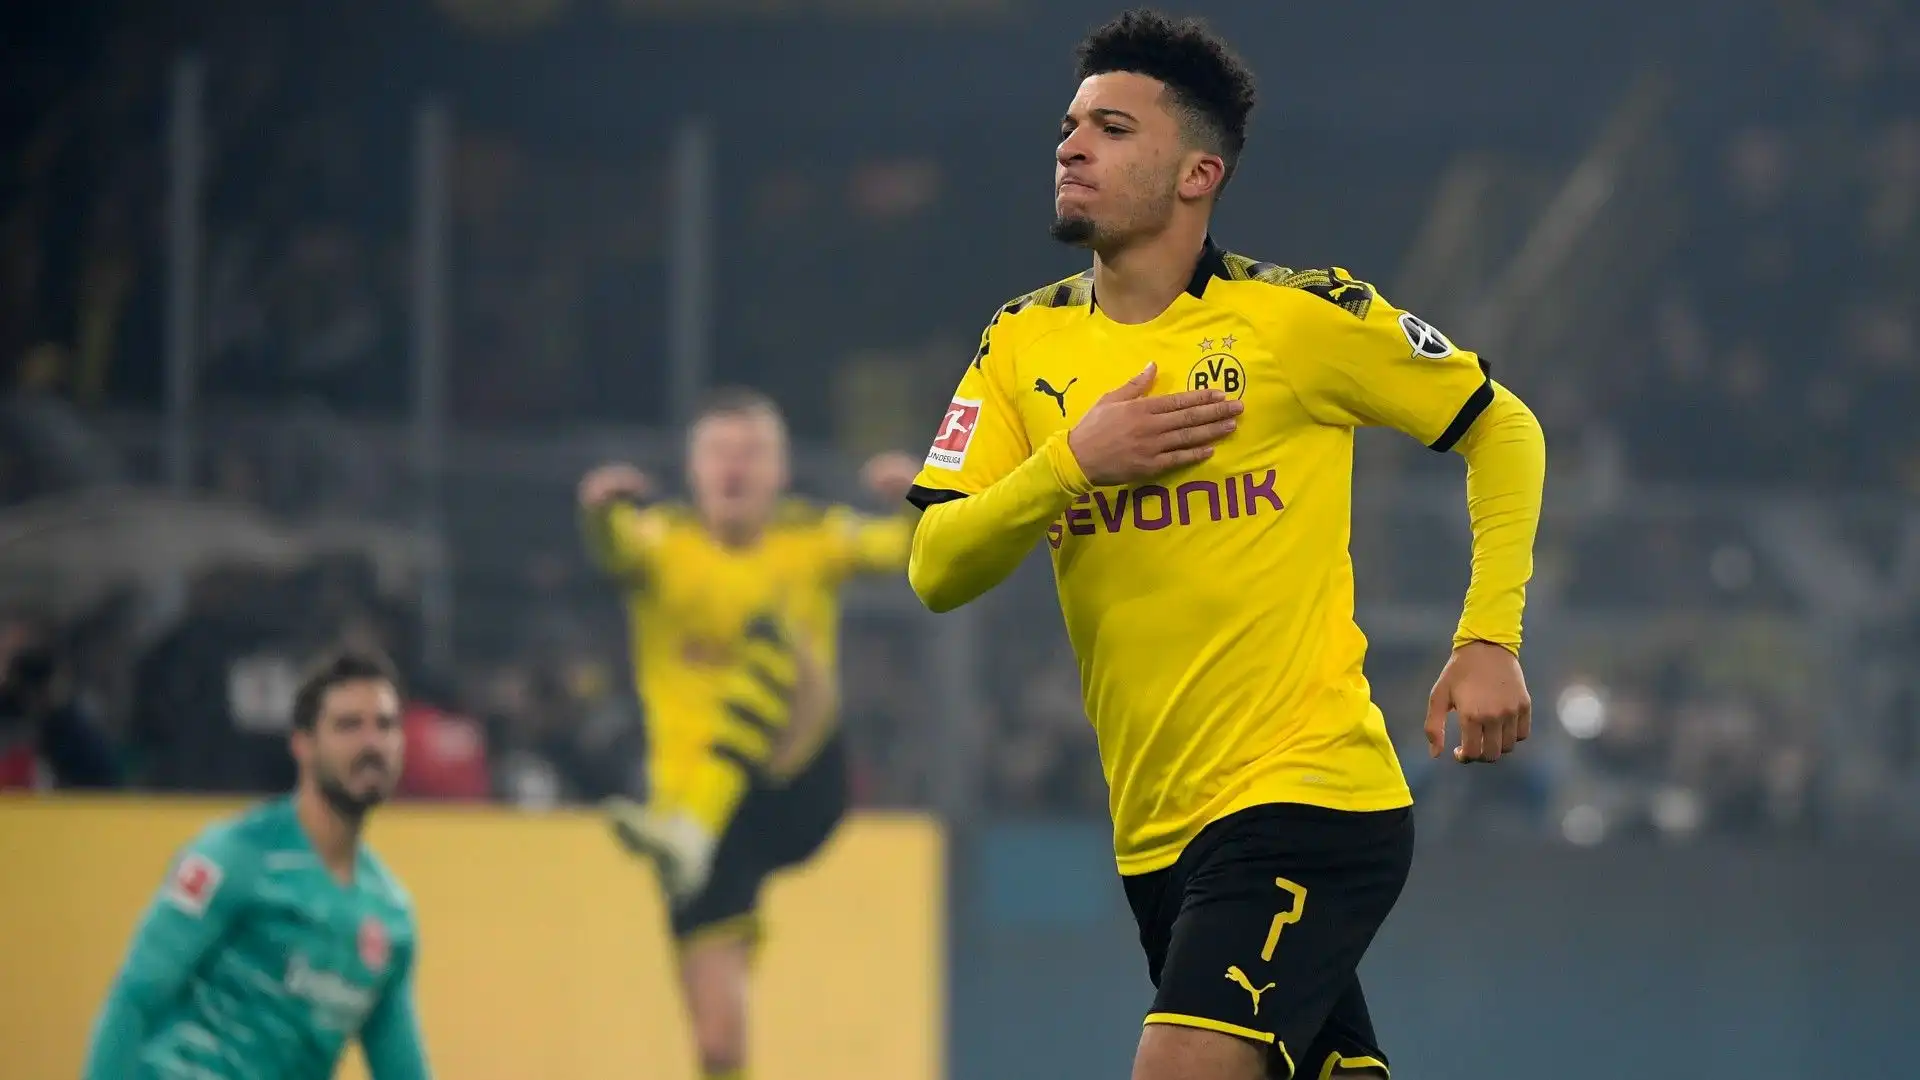 In totale con il Dortmund ha giocato 137 partite con 50 gol e 64 assist